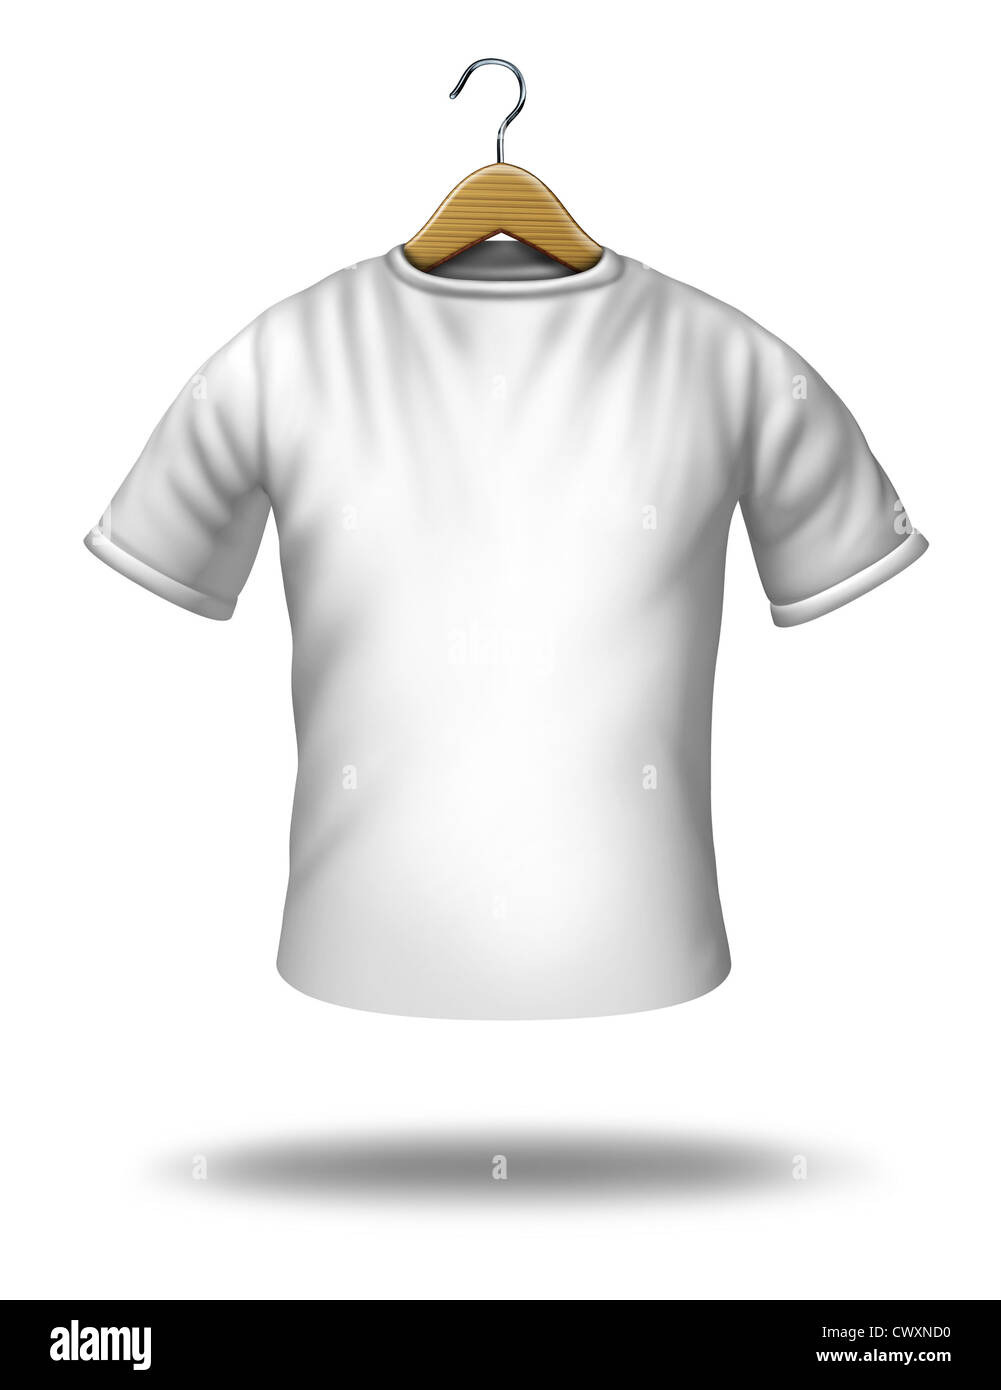 Crochet de vêtements sur une chemise blanche ou blanc T-shirt suspendu dans l'air comme un symbole de la marchandise et l'icône de textiles. Banque D'Images